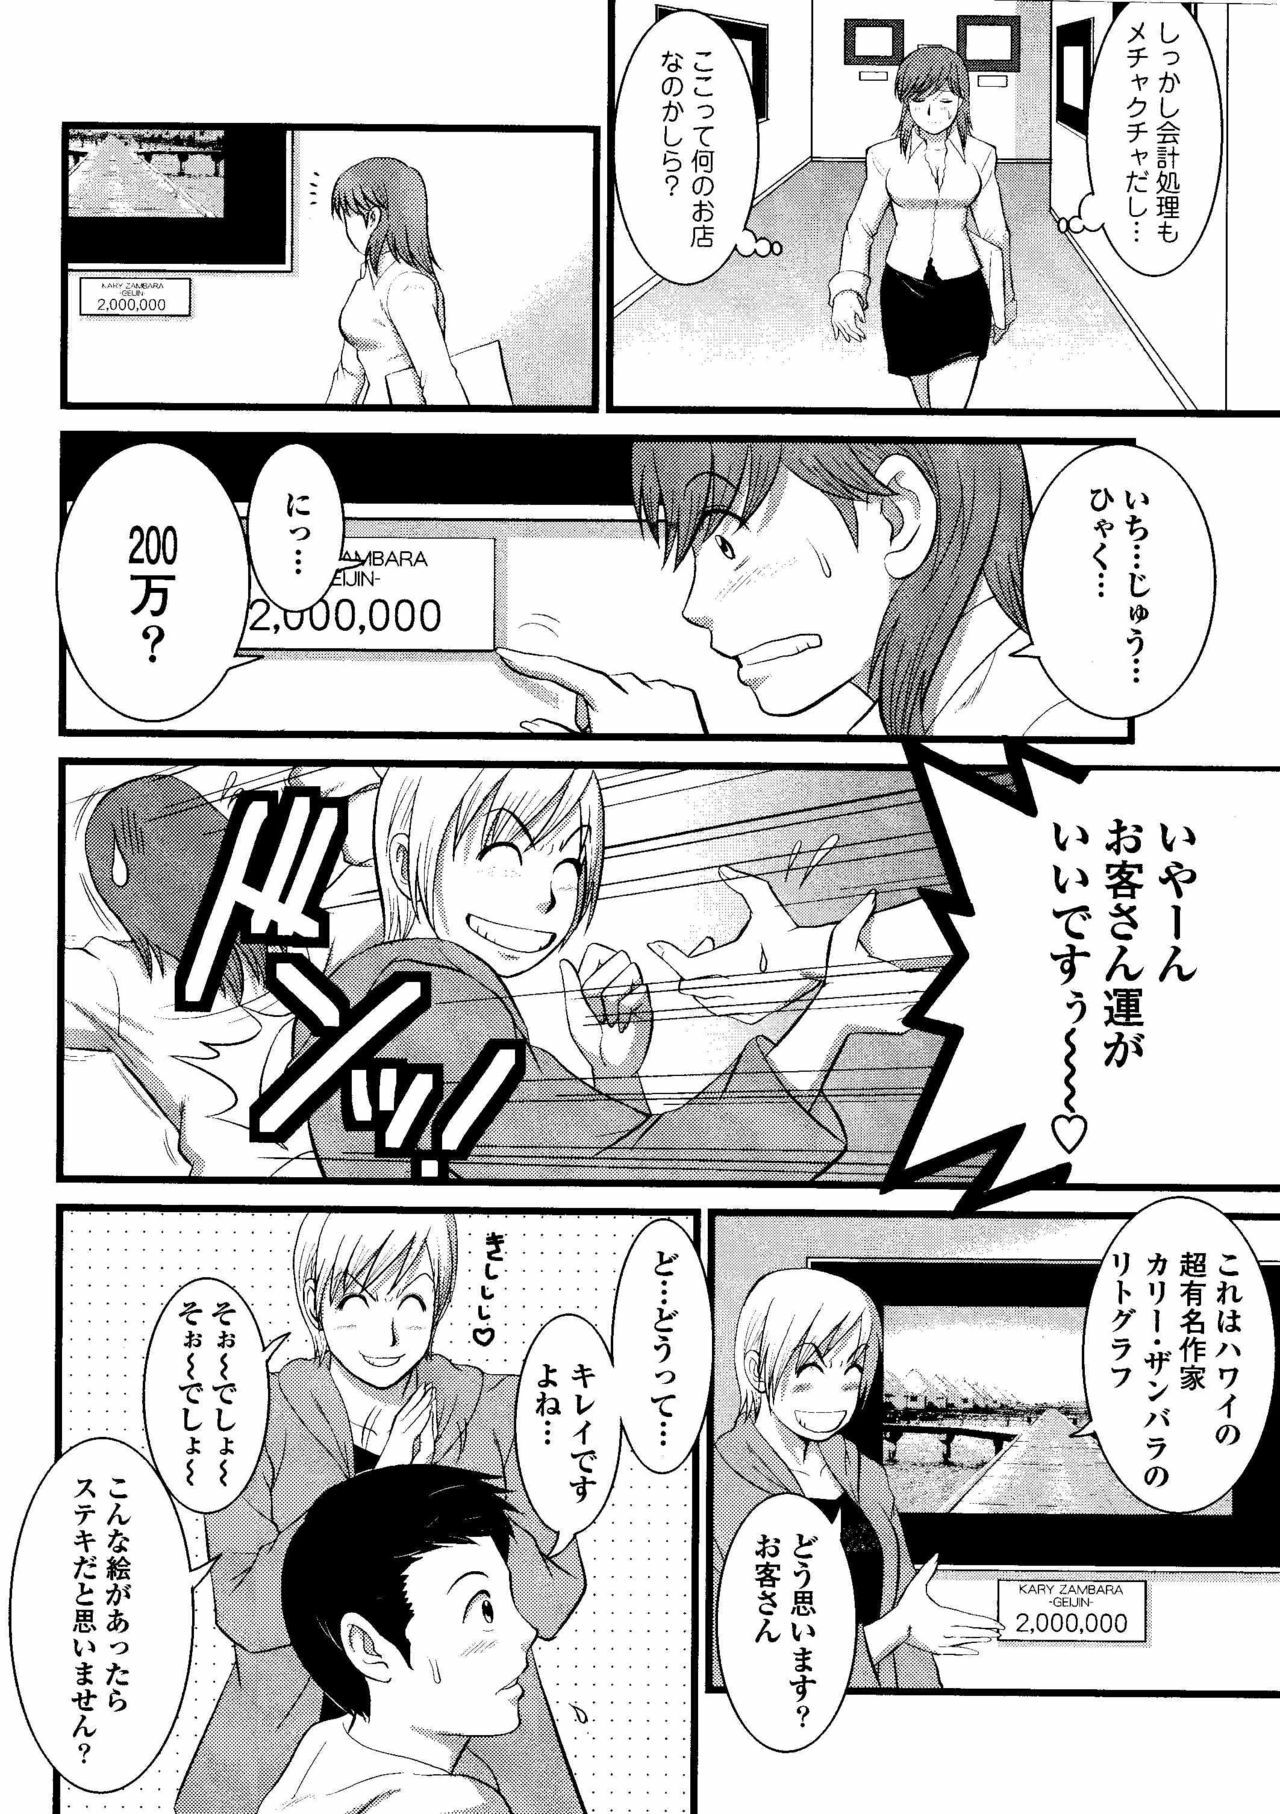 Haken no Muuko-san 8 [Saigado] page 7 full